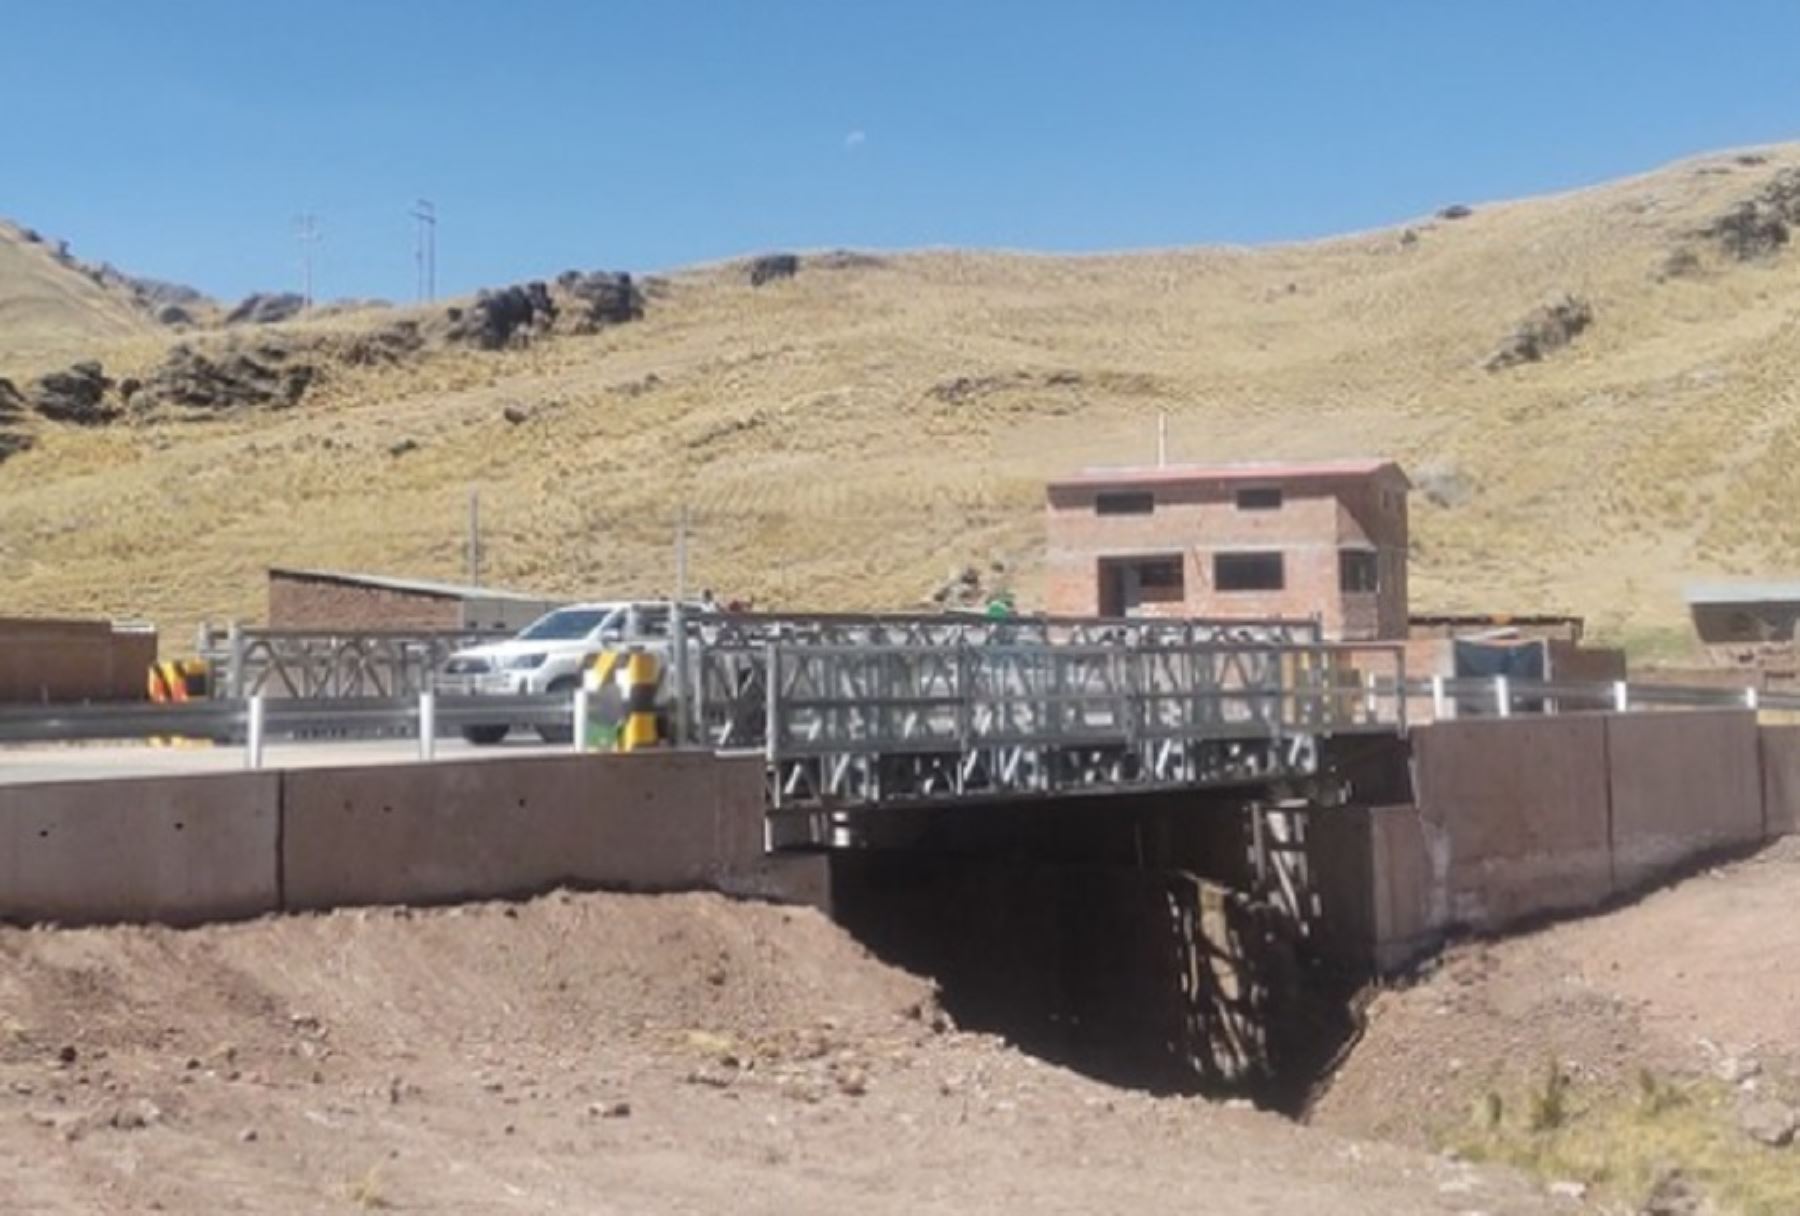 El ministerio de Transportes y Comunicaciones, a través de su unidad ejecutora Provías Nacional, instala tres puentes modulares en el Cusco con el objetivo de mejorar e incrementar la eficiencia del transporte terrestre en dicha región.